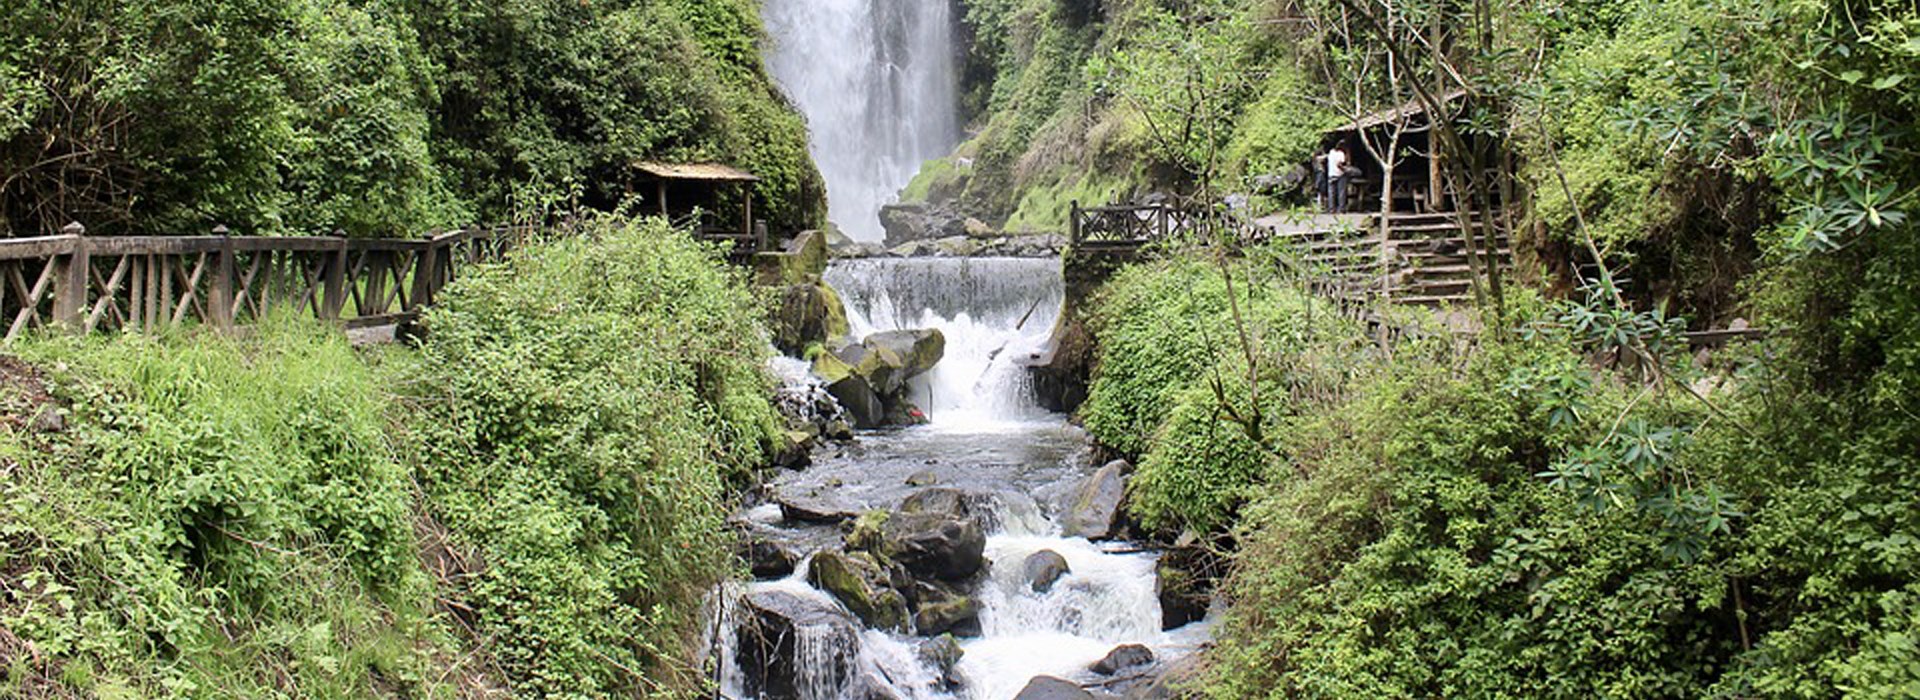 Visiter La cascade de Péguche - Equateur